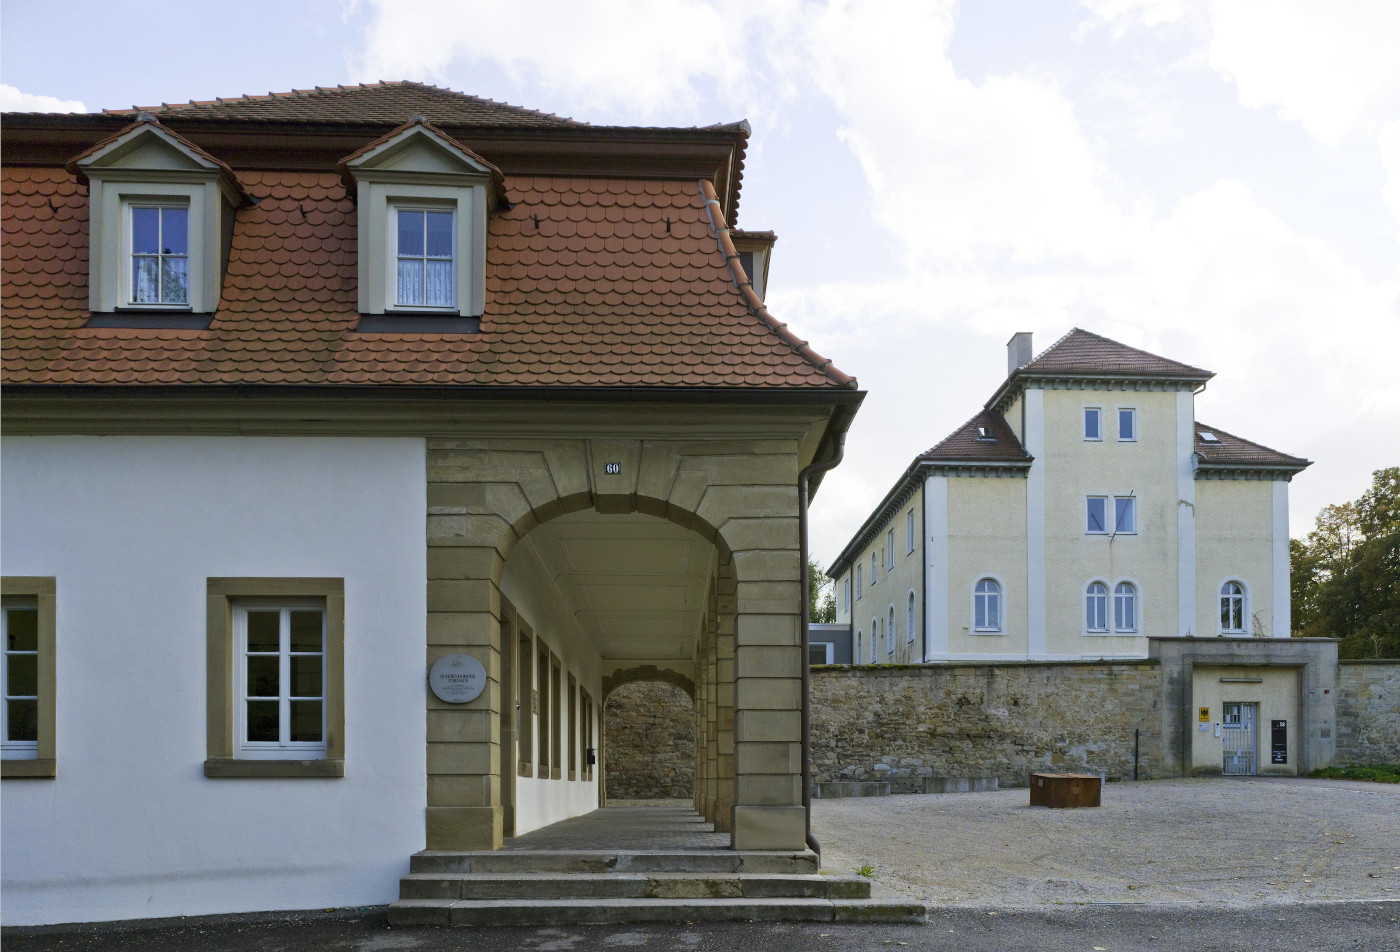 Dienststelle des Bundesarchivs in Ludwigsburg mit Schorndorfer Torhaus im Vordergrund